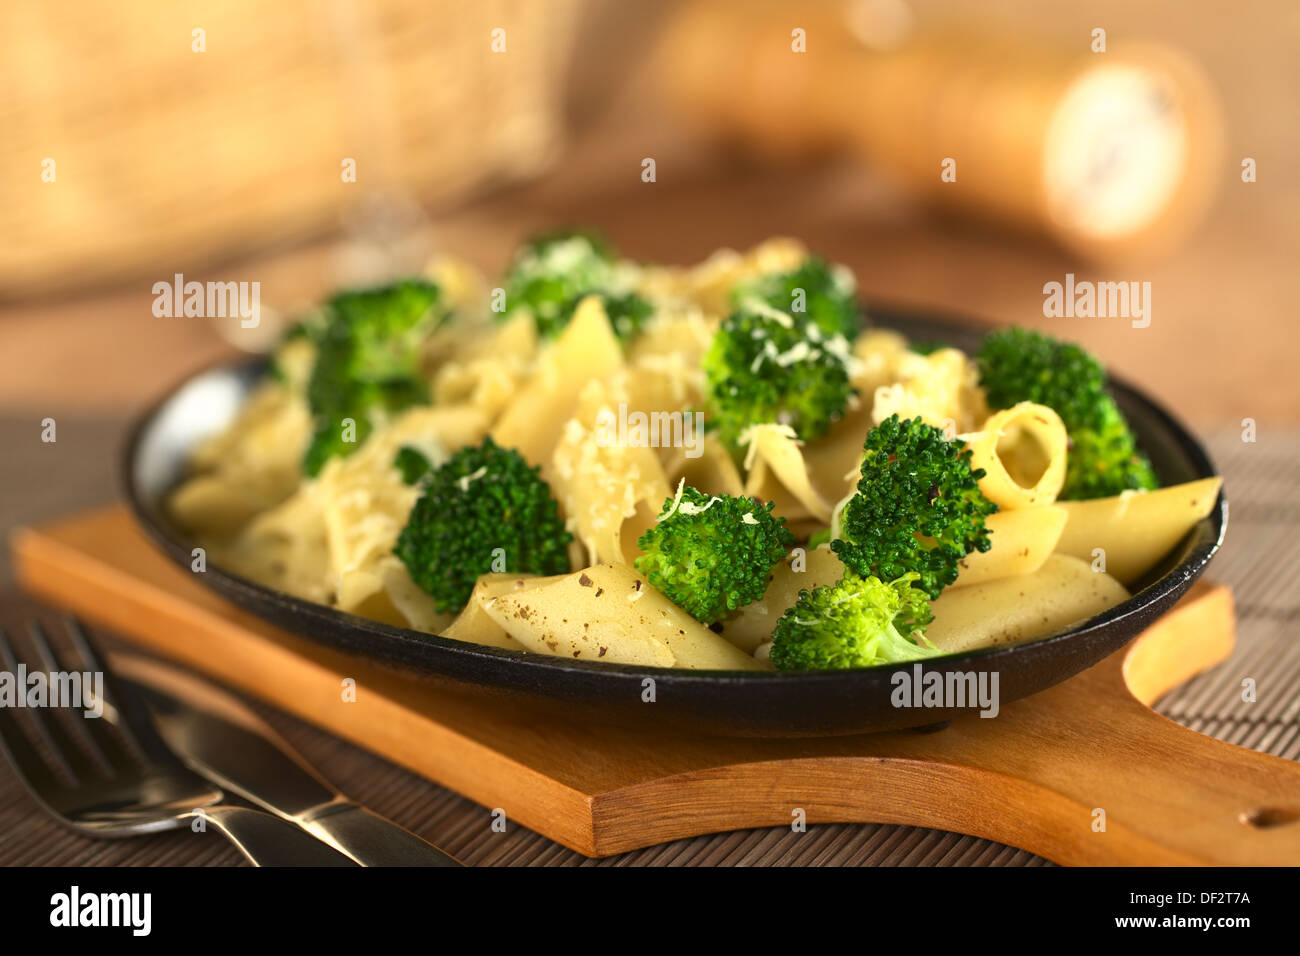 Les pâtes et le brocoli gratiné au fromage râpé (Selective Focus, se concentrer sur les deux bouquets de brocoli un tiers dans l'image) Banque D'Images